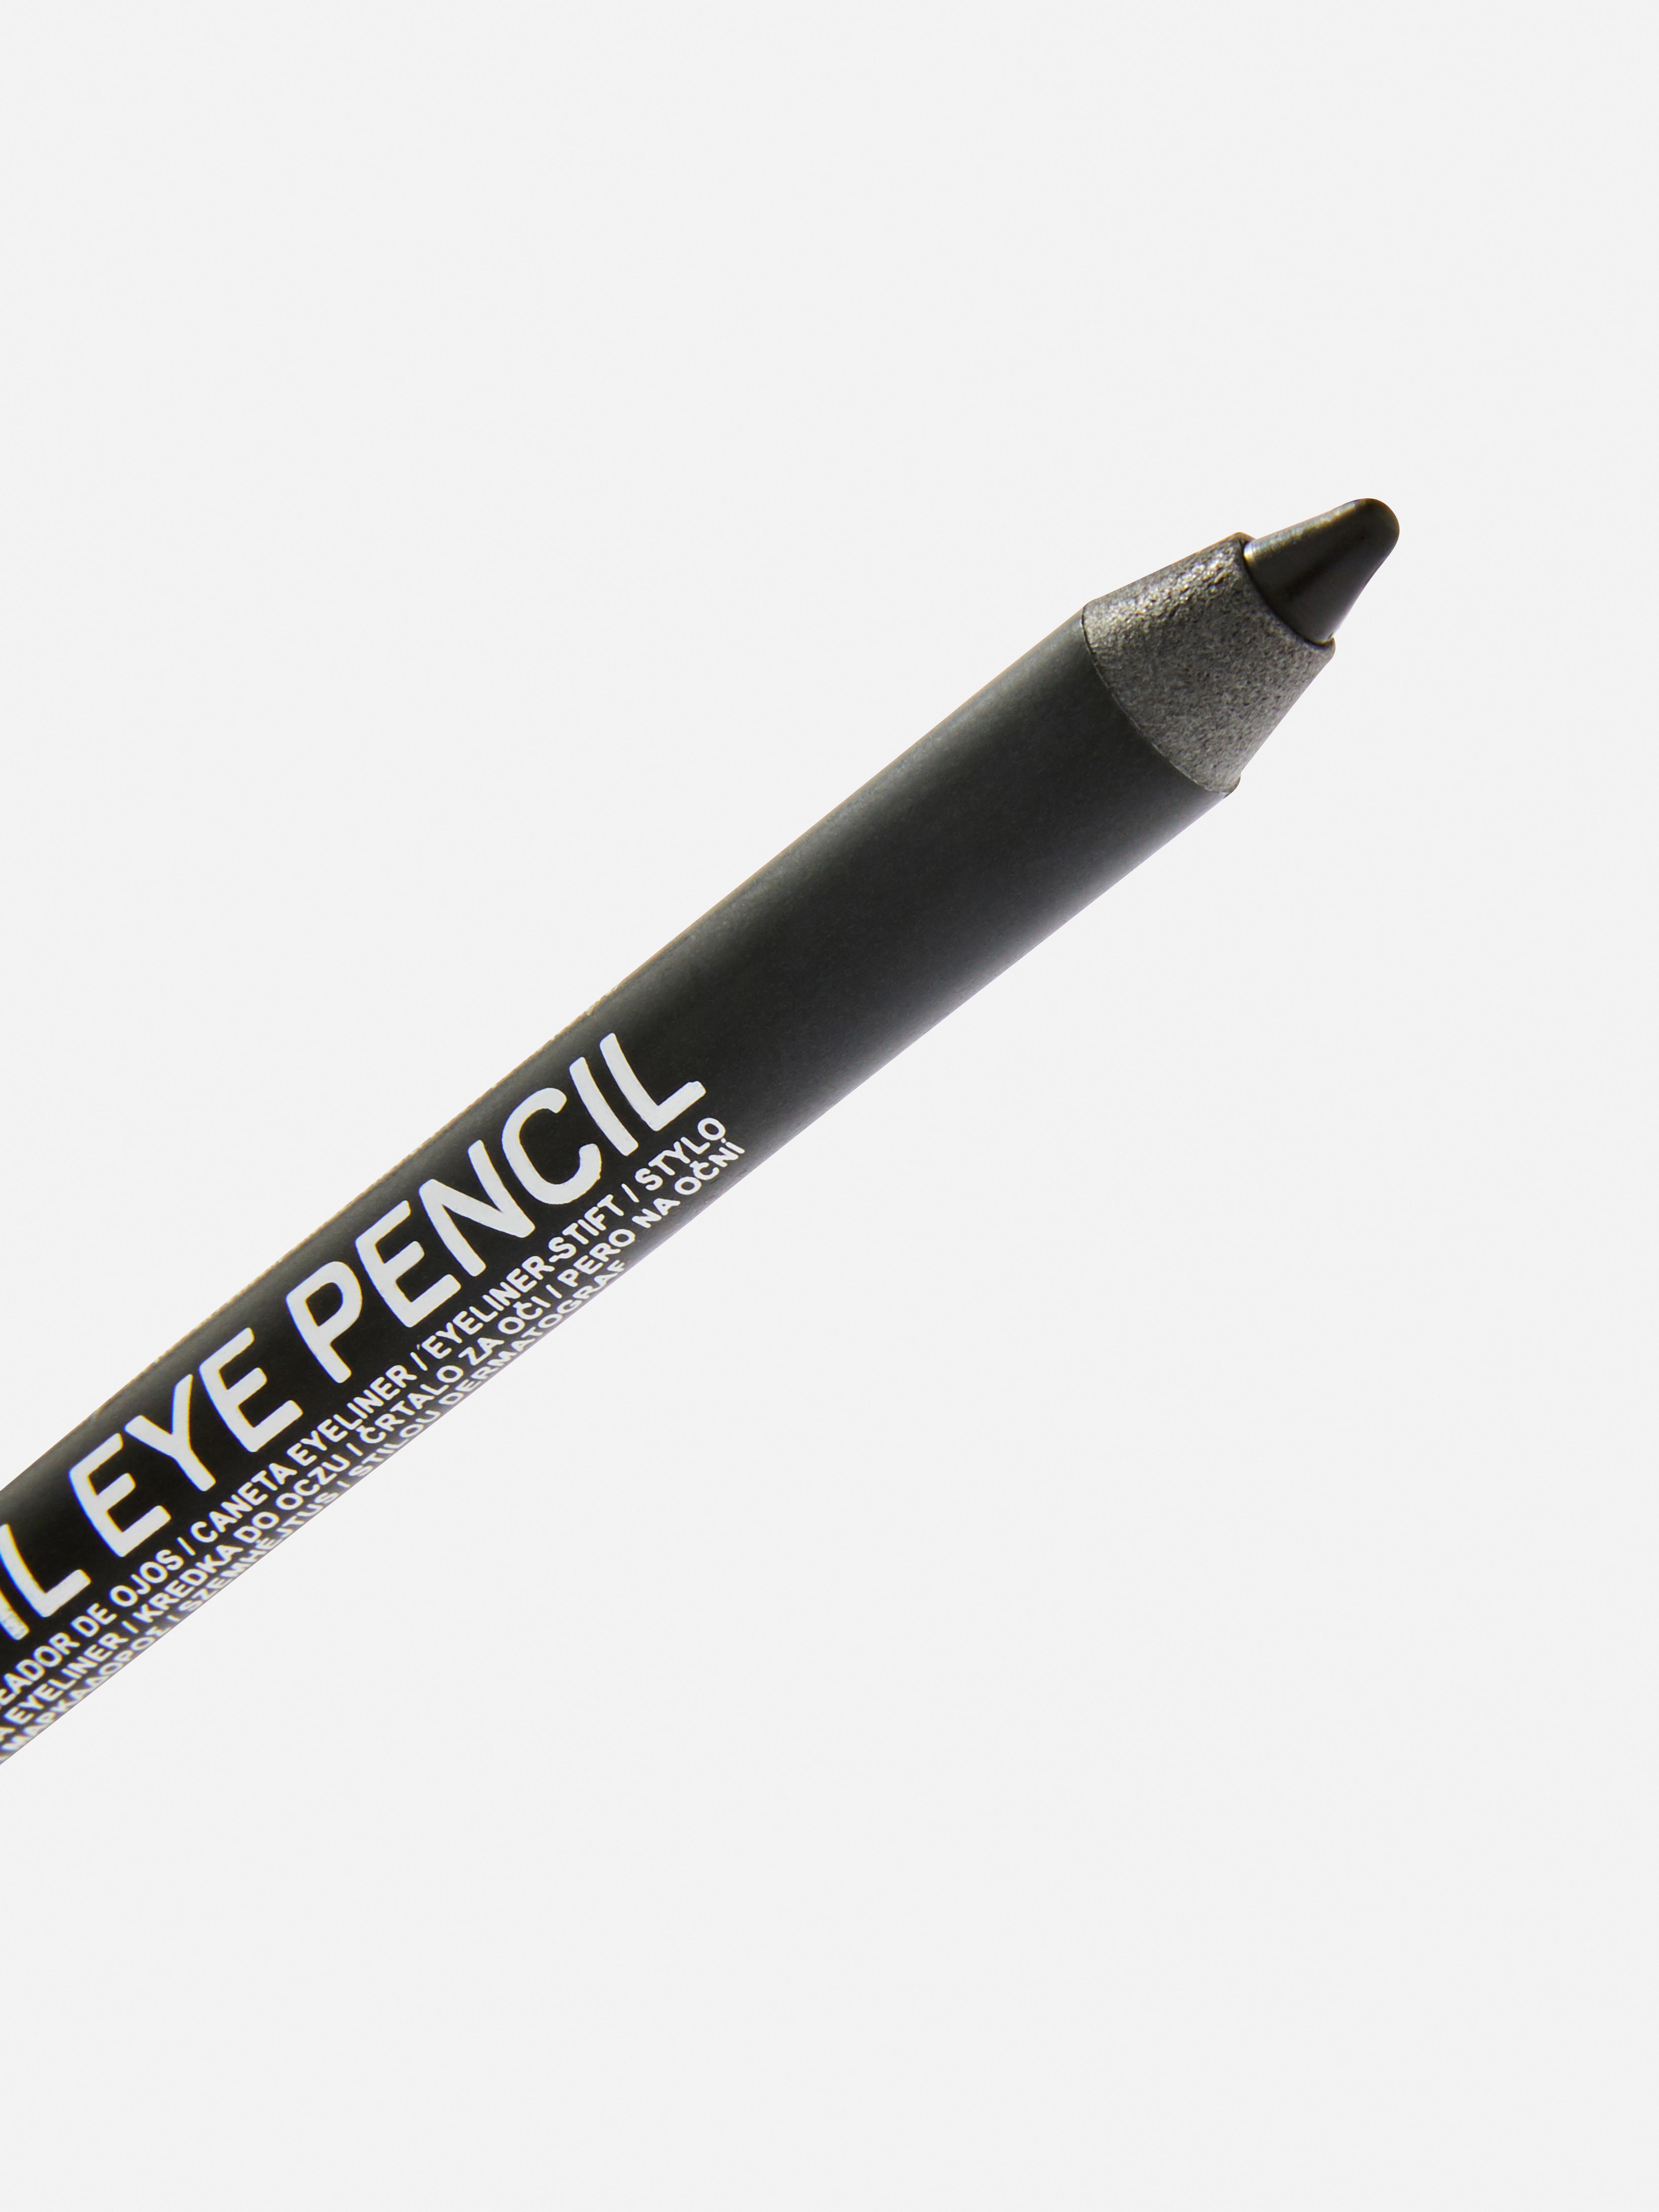 PS Kohl Eye Pencil